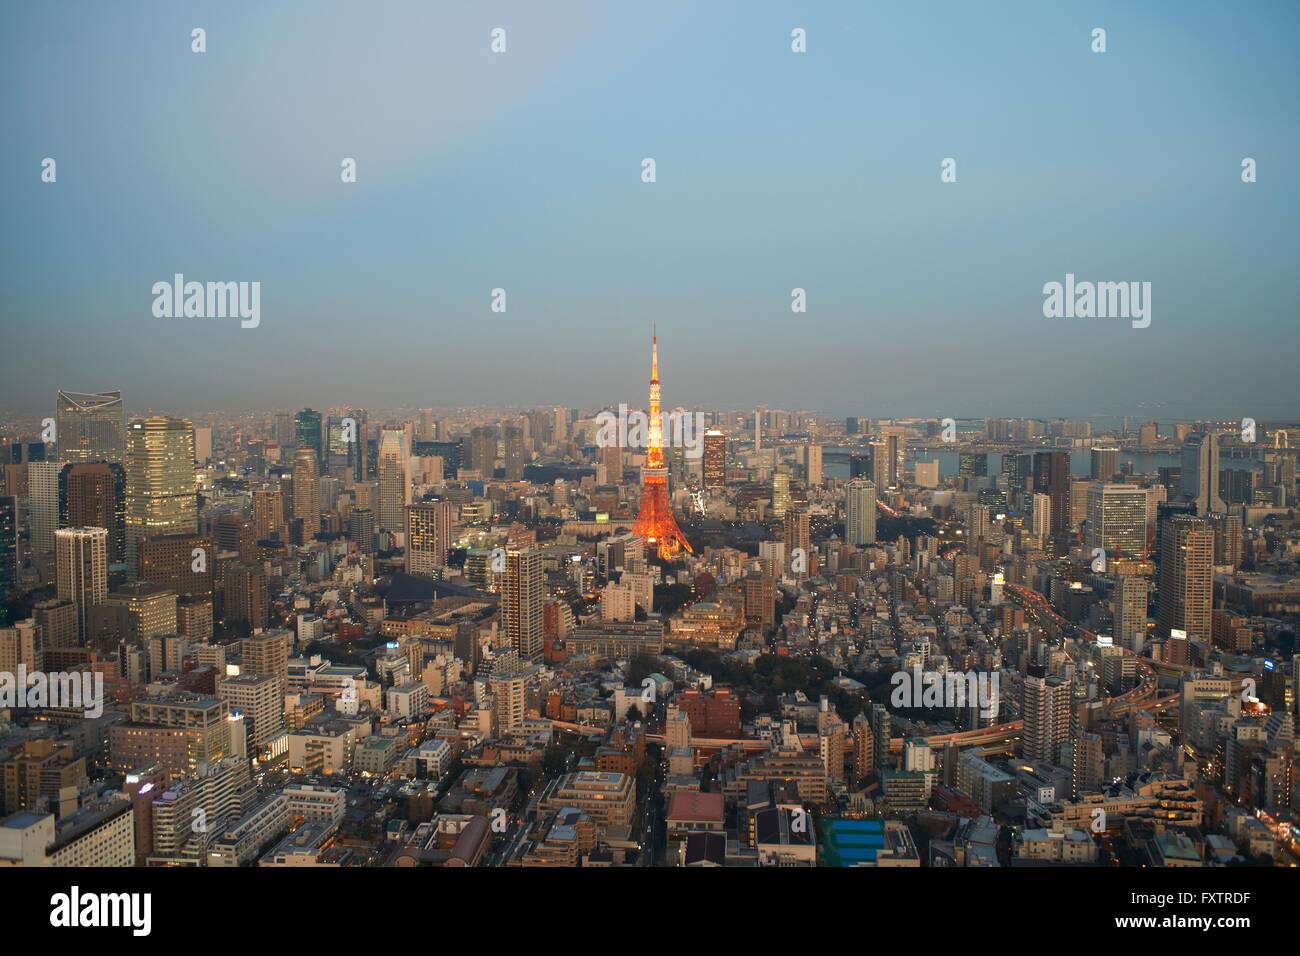 Vista del paisaje urbano con la Torre de Tokyo, Tokio, Japón Foto de stock